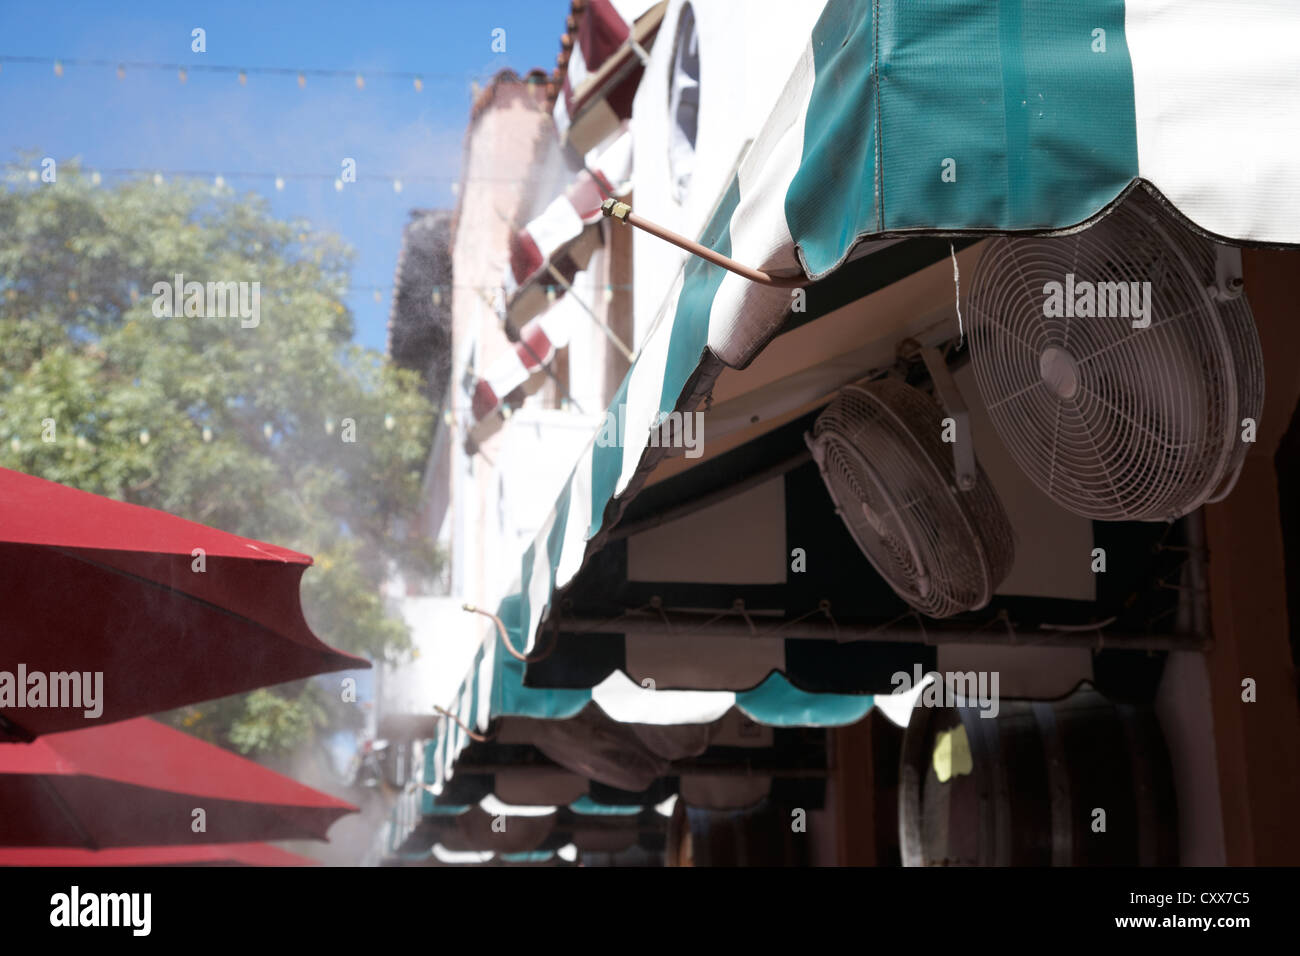 La foschia la spruzzatura di acqua come aria condizionata al di fuori di un ristorante di South Beach di Miami Florida usa Foto Stock